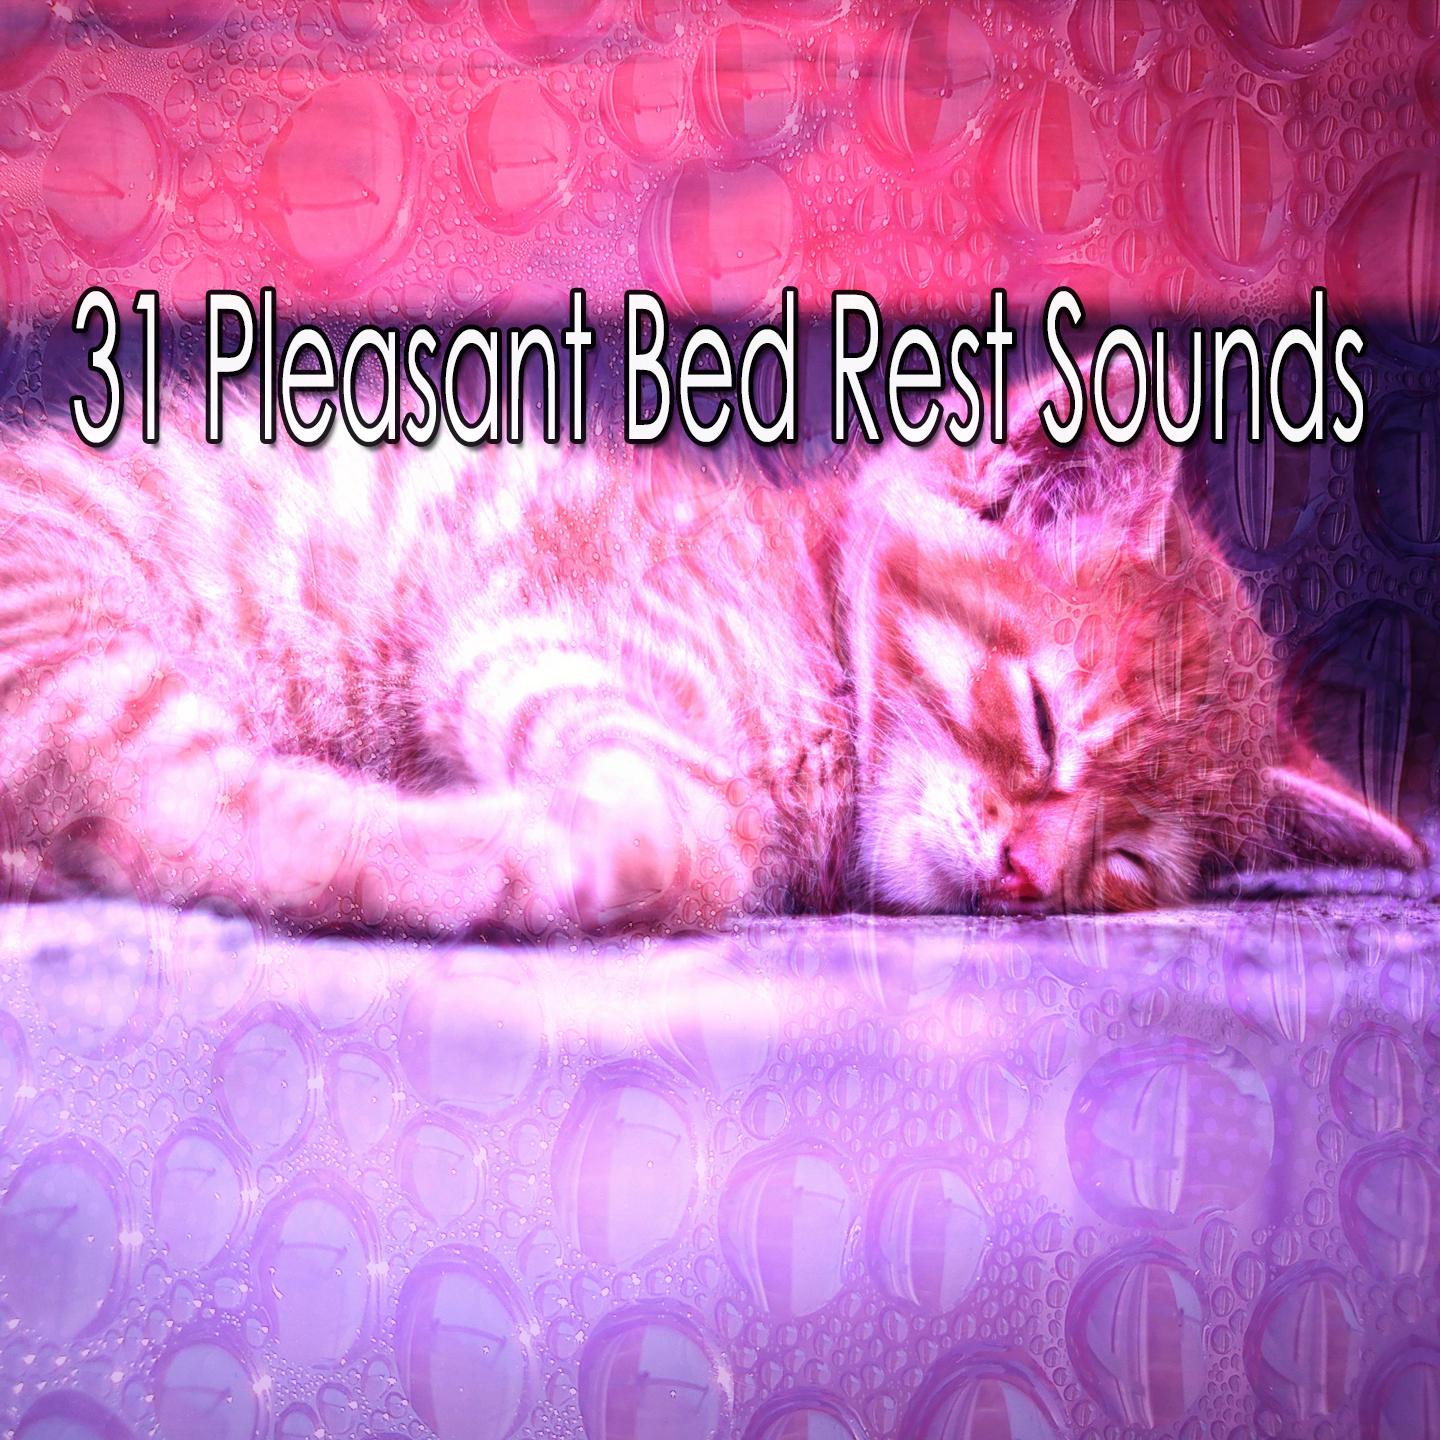 31 Pleasant Bed Rest Sounds